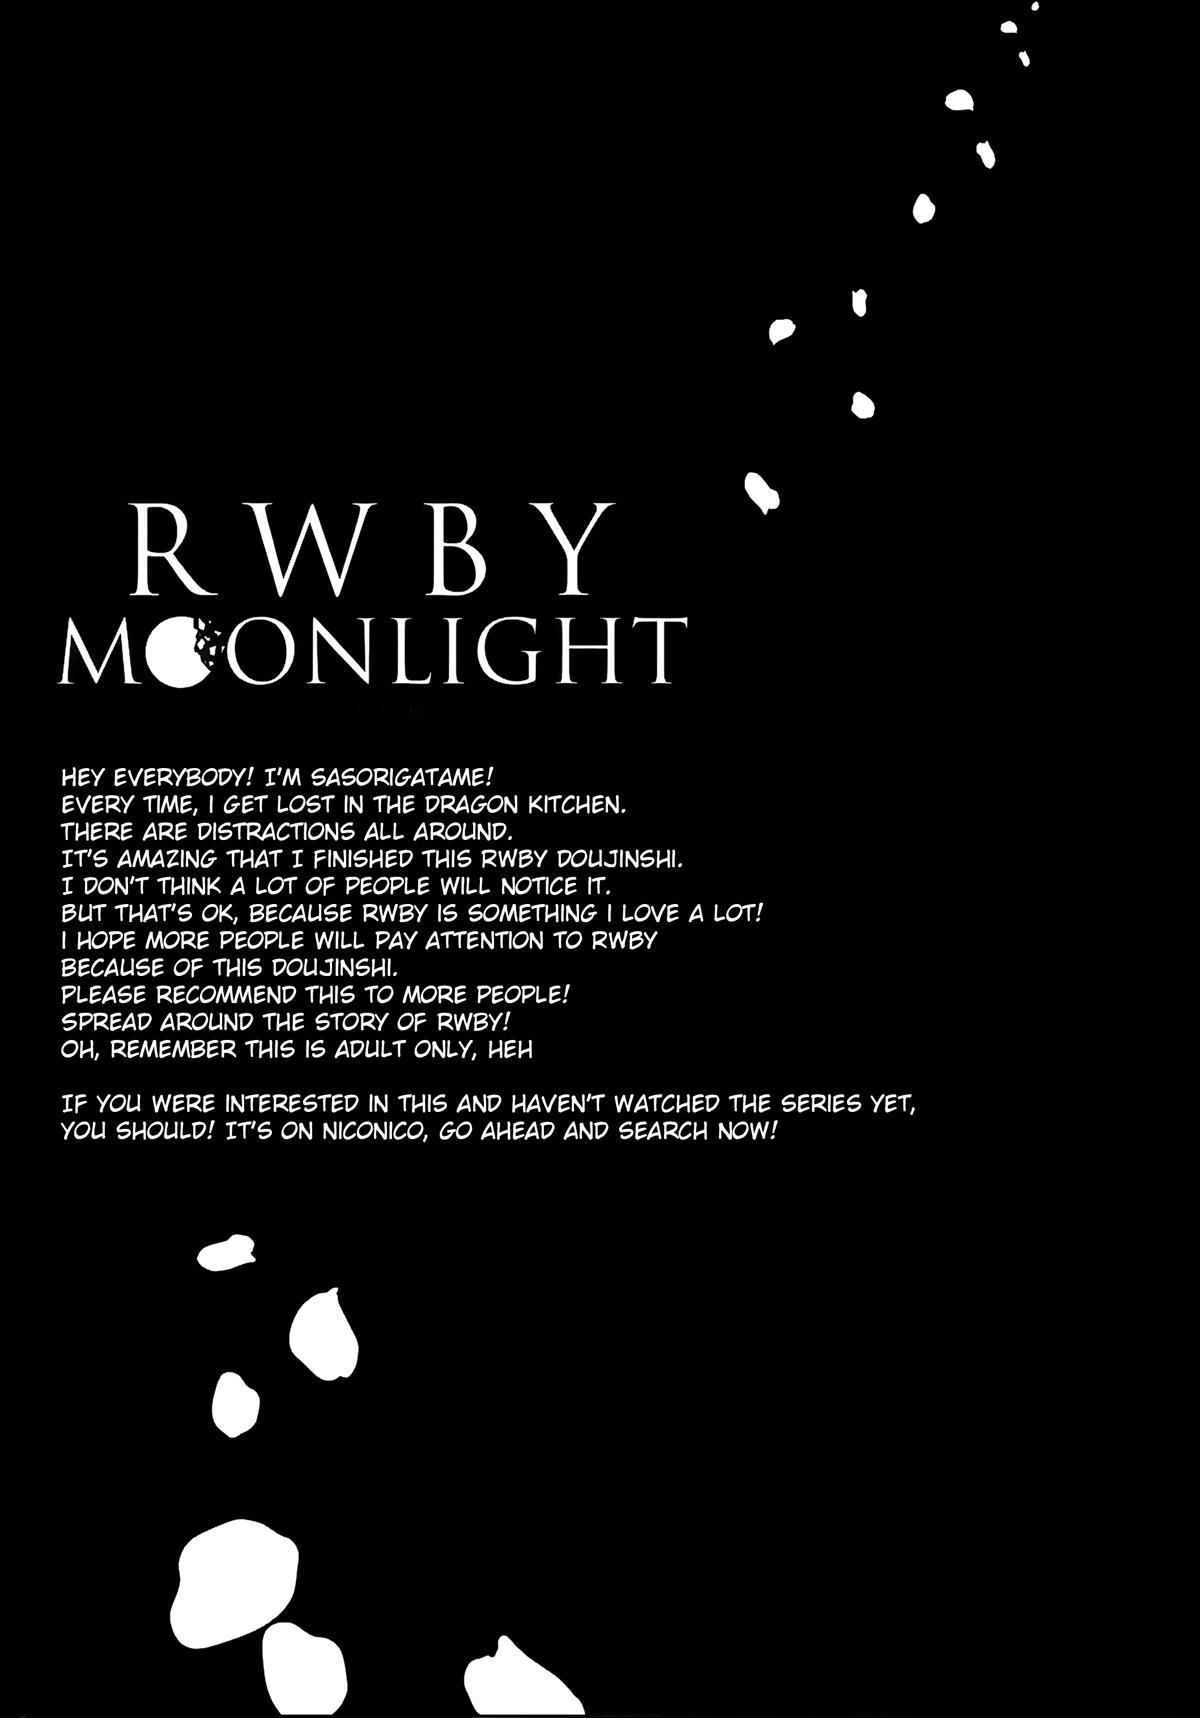 RWBY MOONLIGHT 19